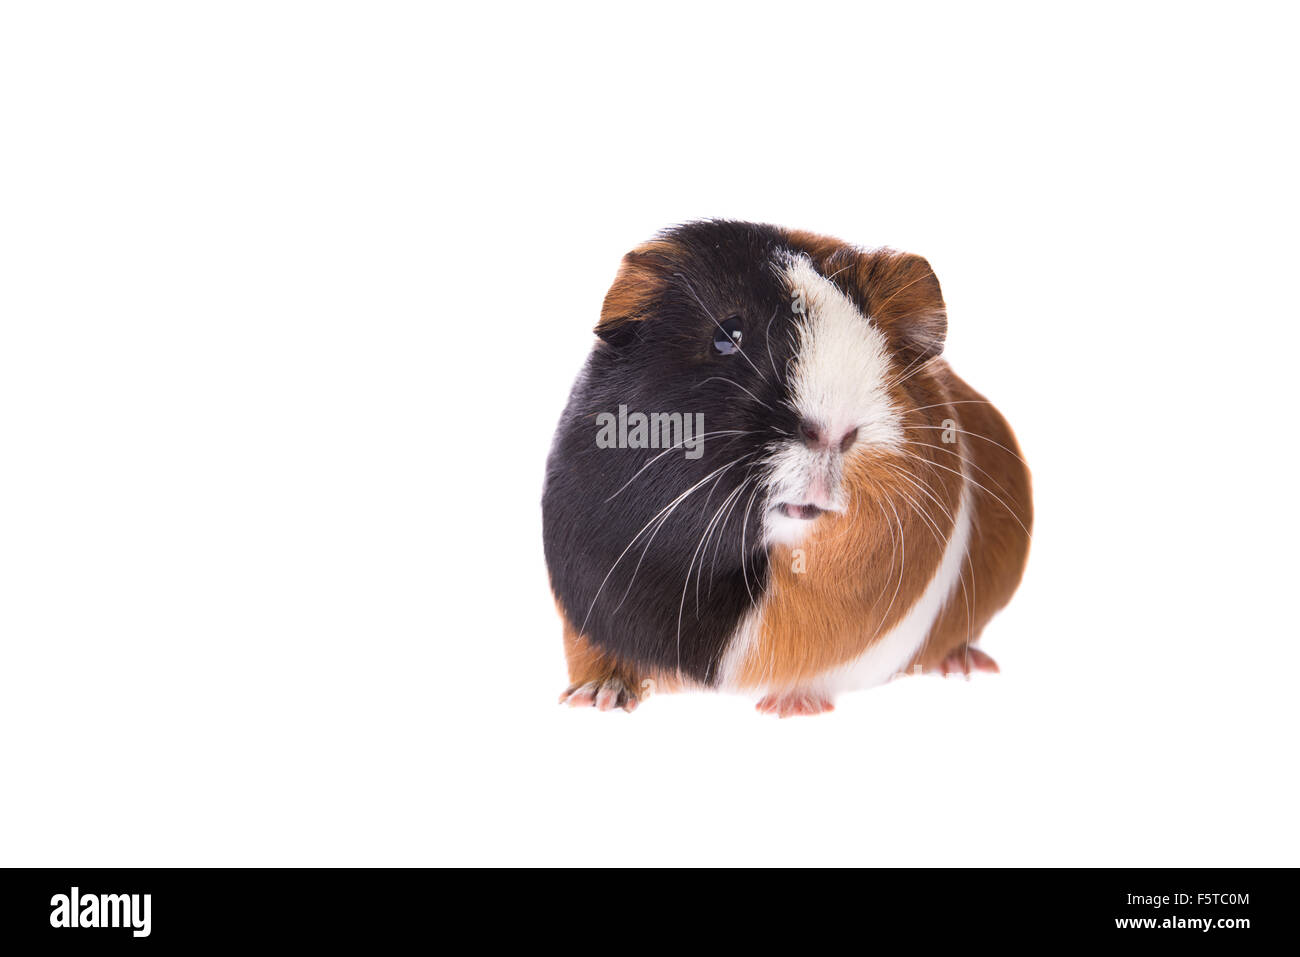 Guinea pig facing the camera Stock Photo